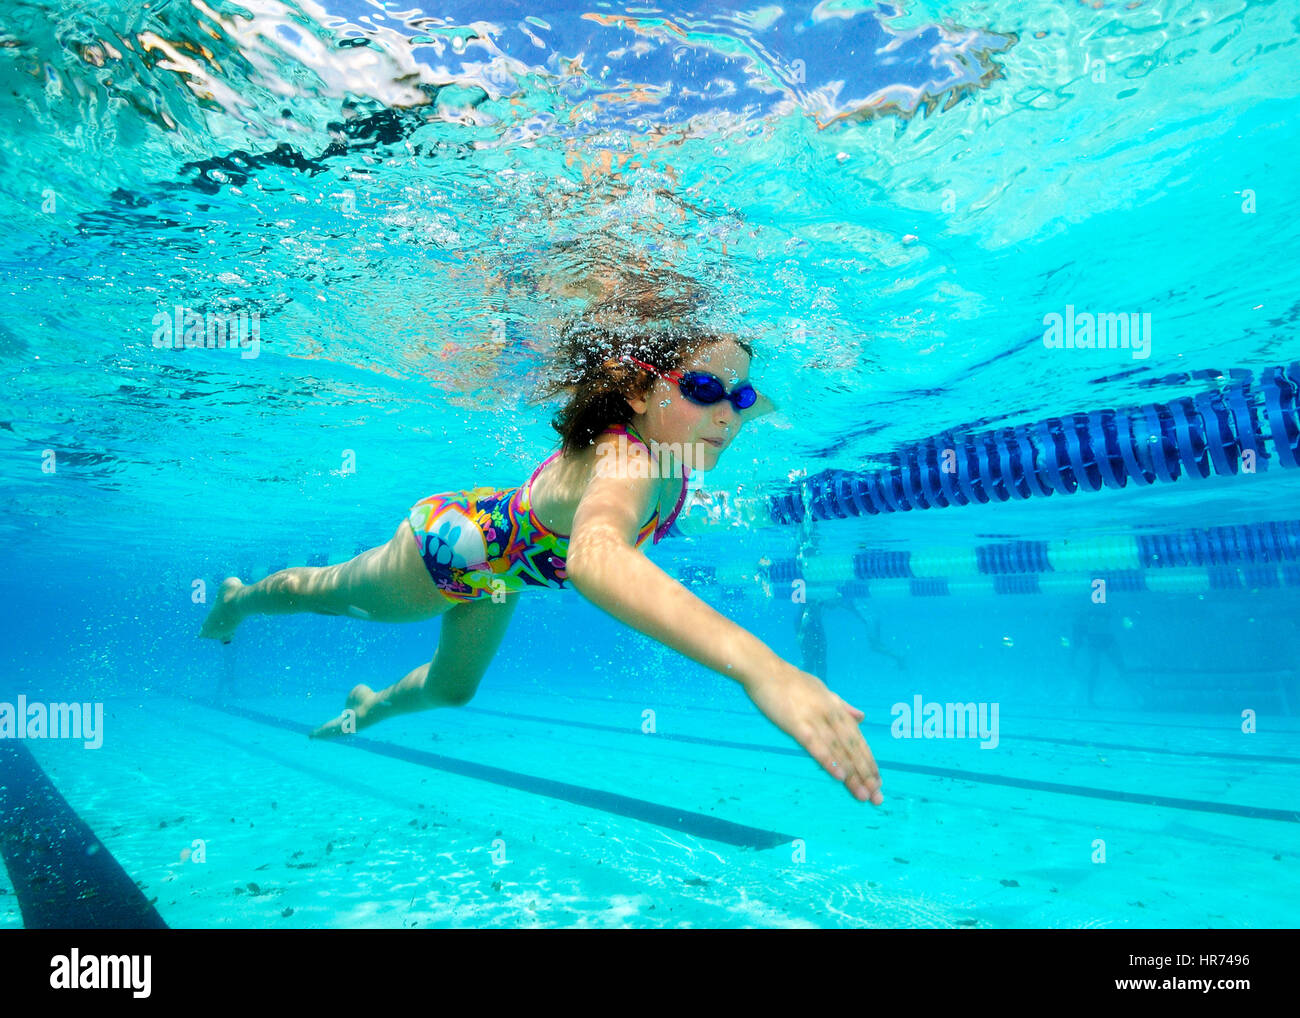 Les enfants nager sous l'eau en profitant de la piscine d'été de détente Banque D'Images